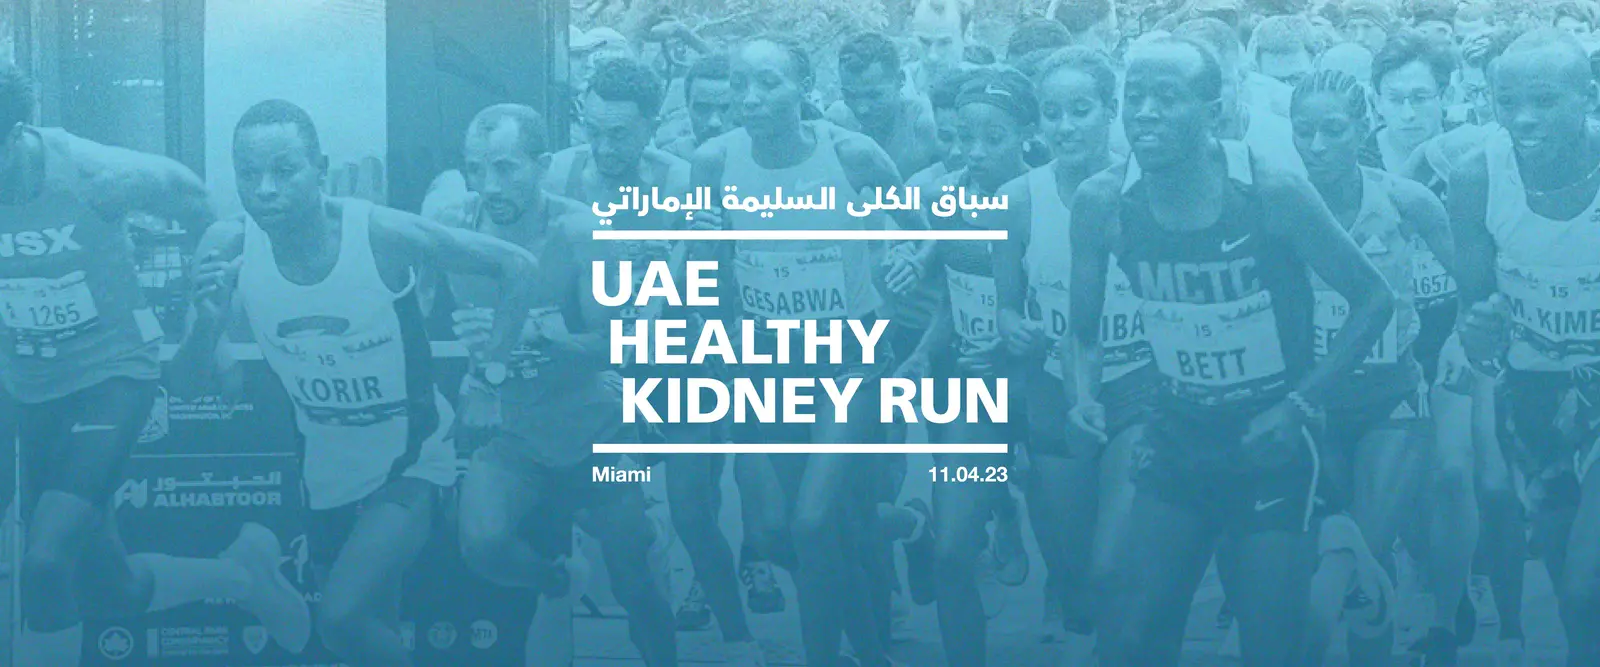 UAE Healthy Kidney Run